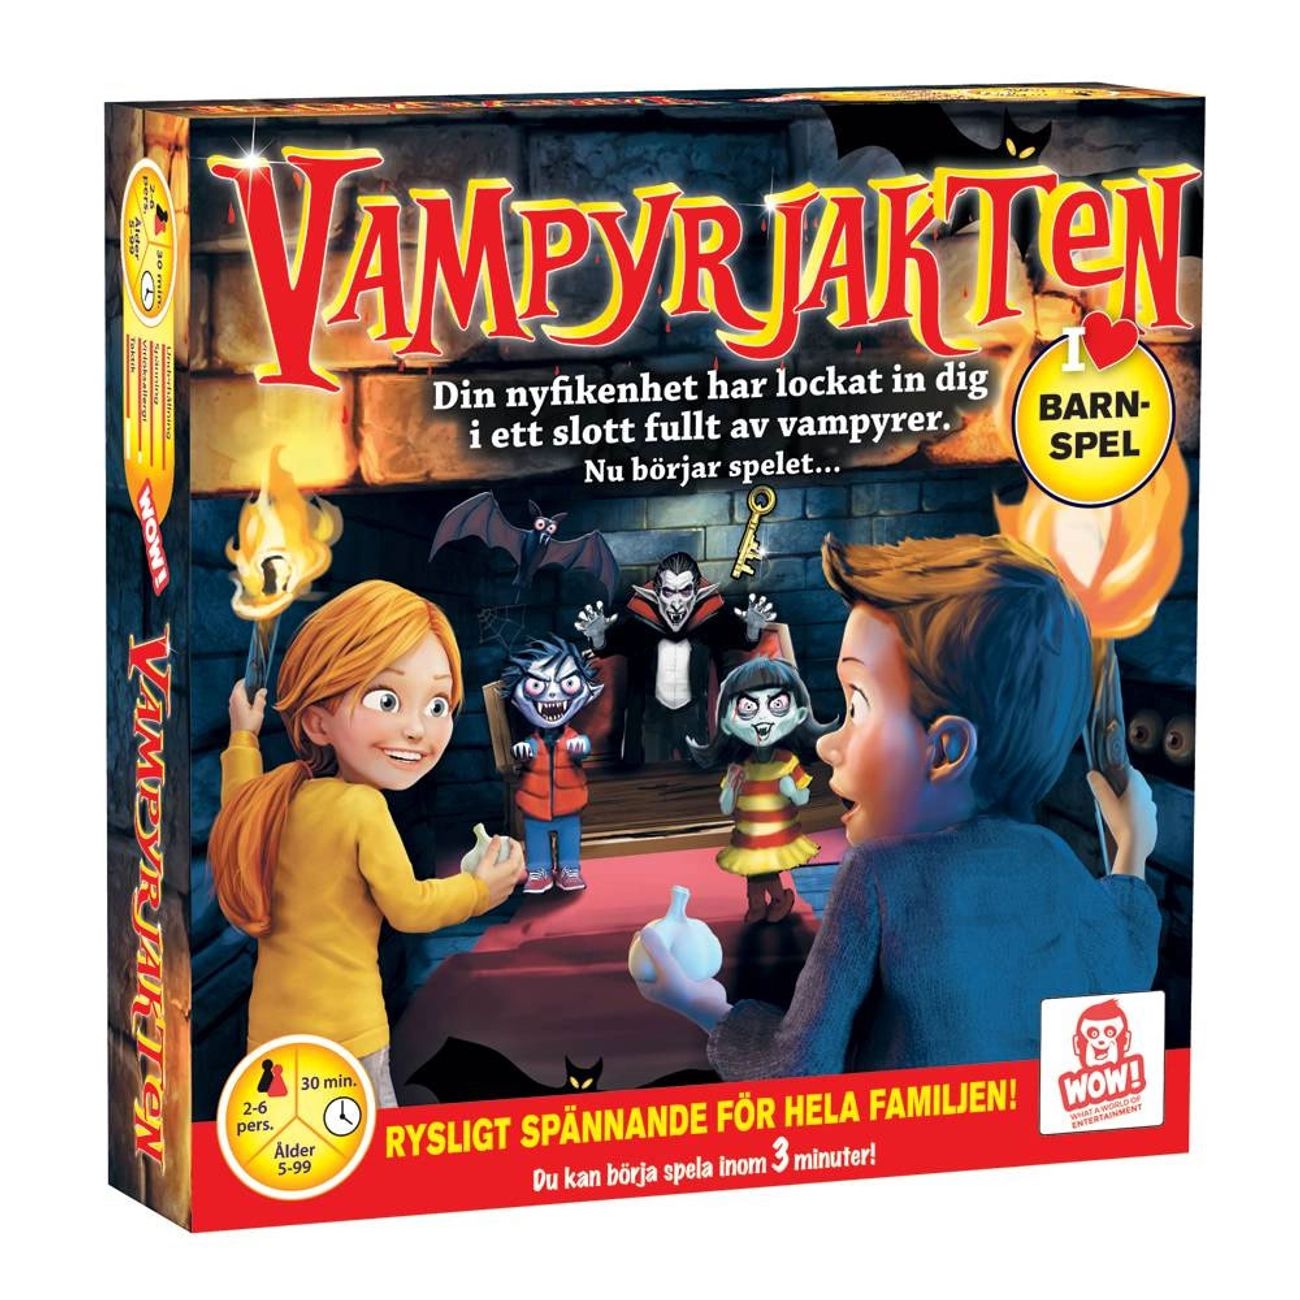 vampyrjakten-barnspel-80401-1